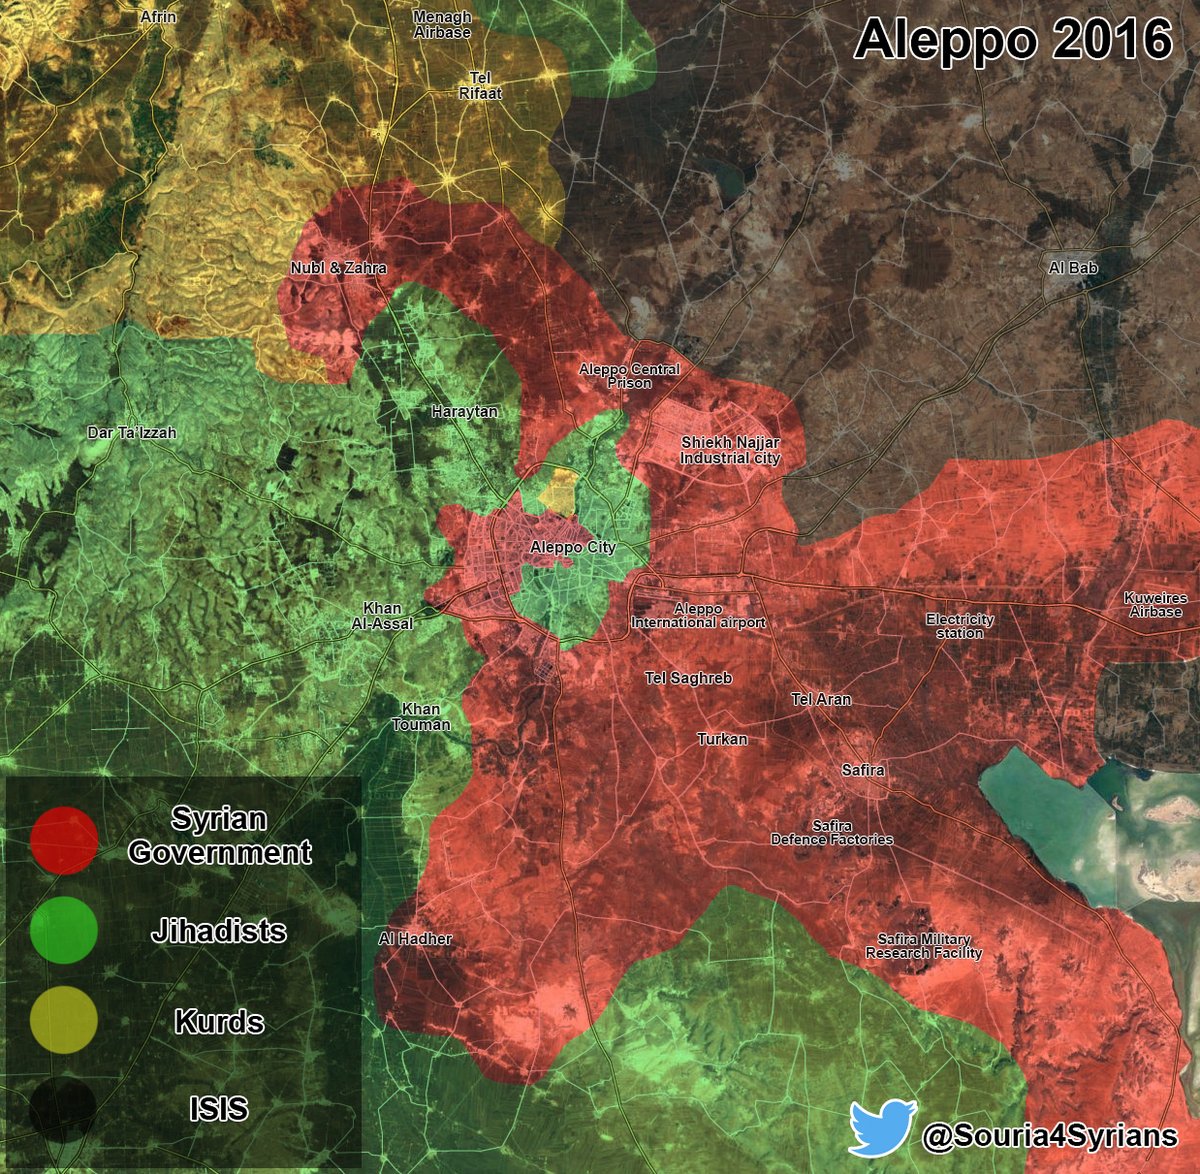 Maps Comparison: Aleppo City in 2013 vs Aleppo City in 2016